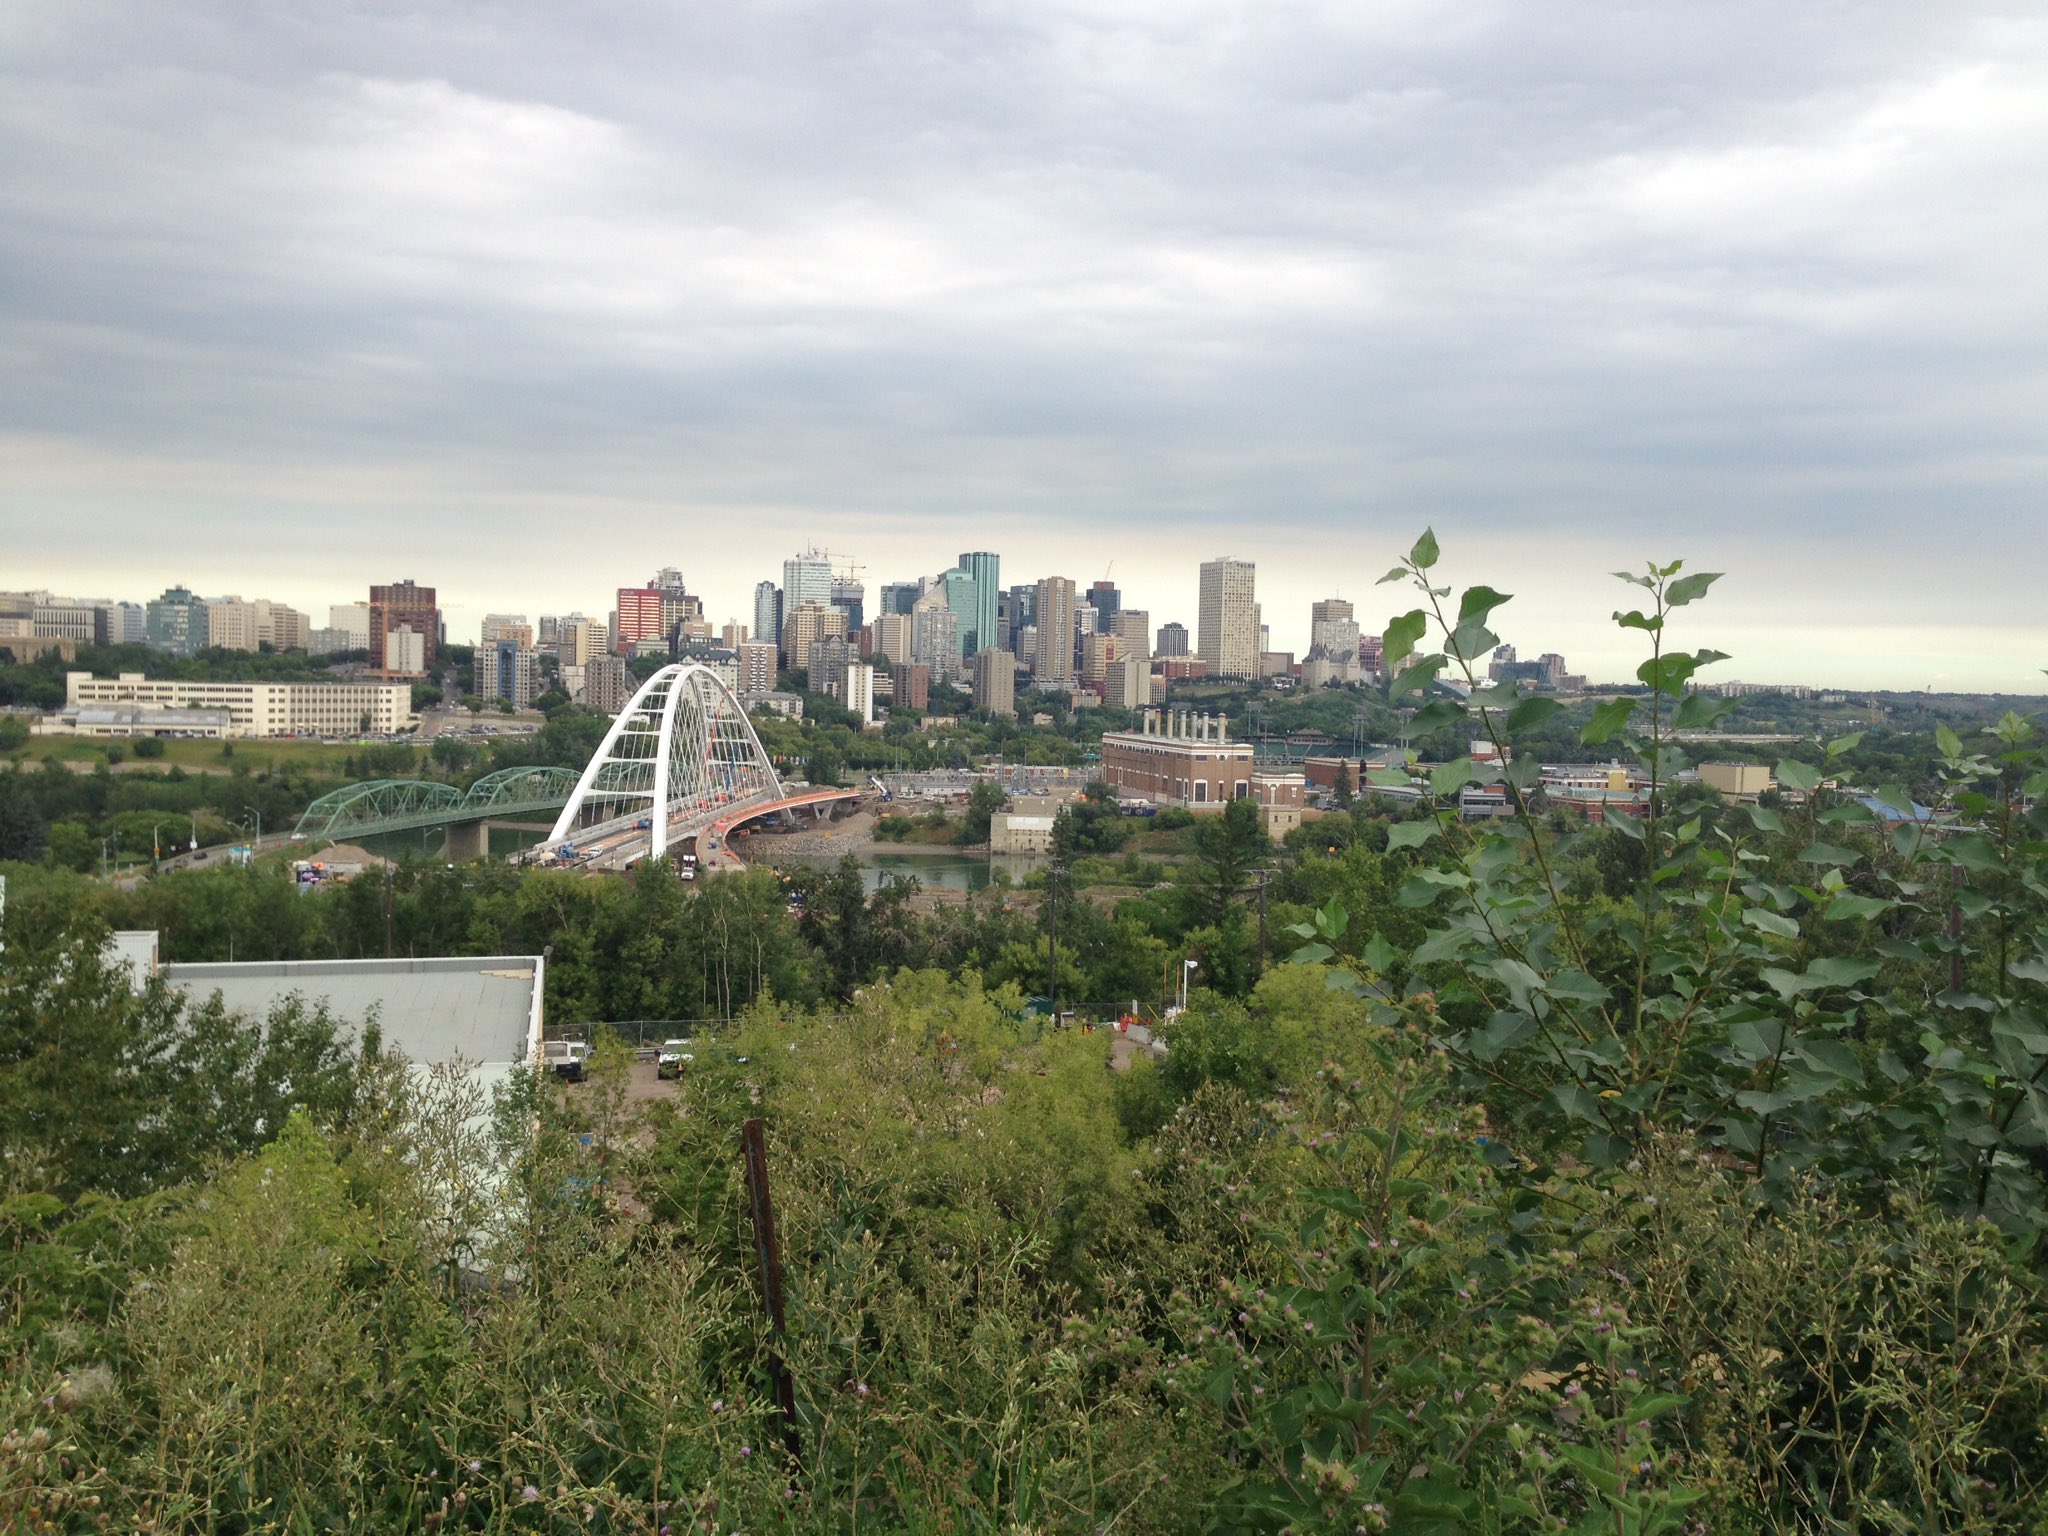  Skyline der Stadt Edmonton, gesehen vom Saskatchewan Drive am 31. Juli 2017.